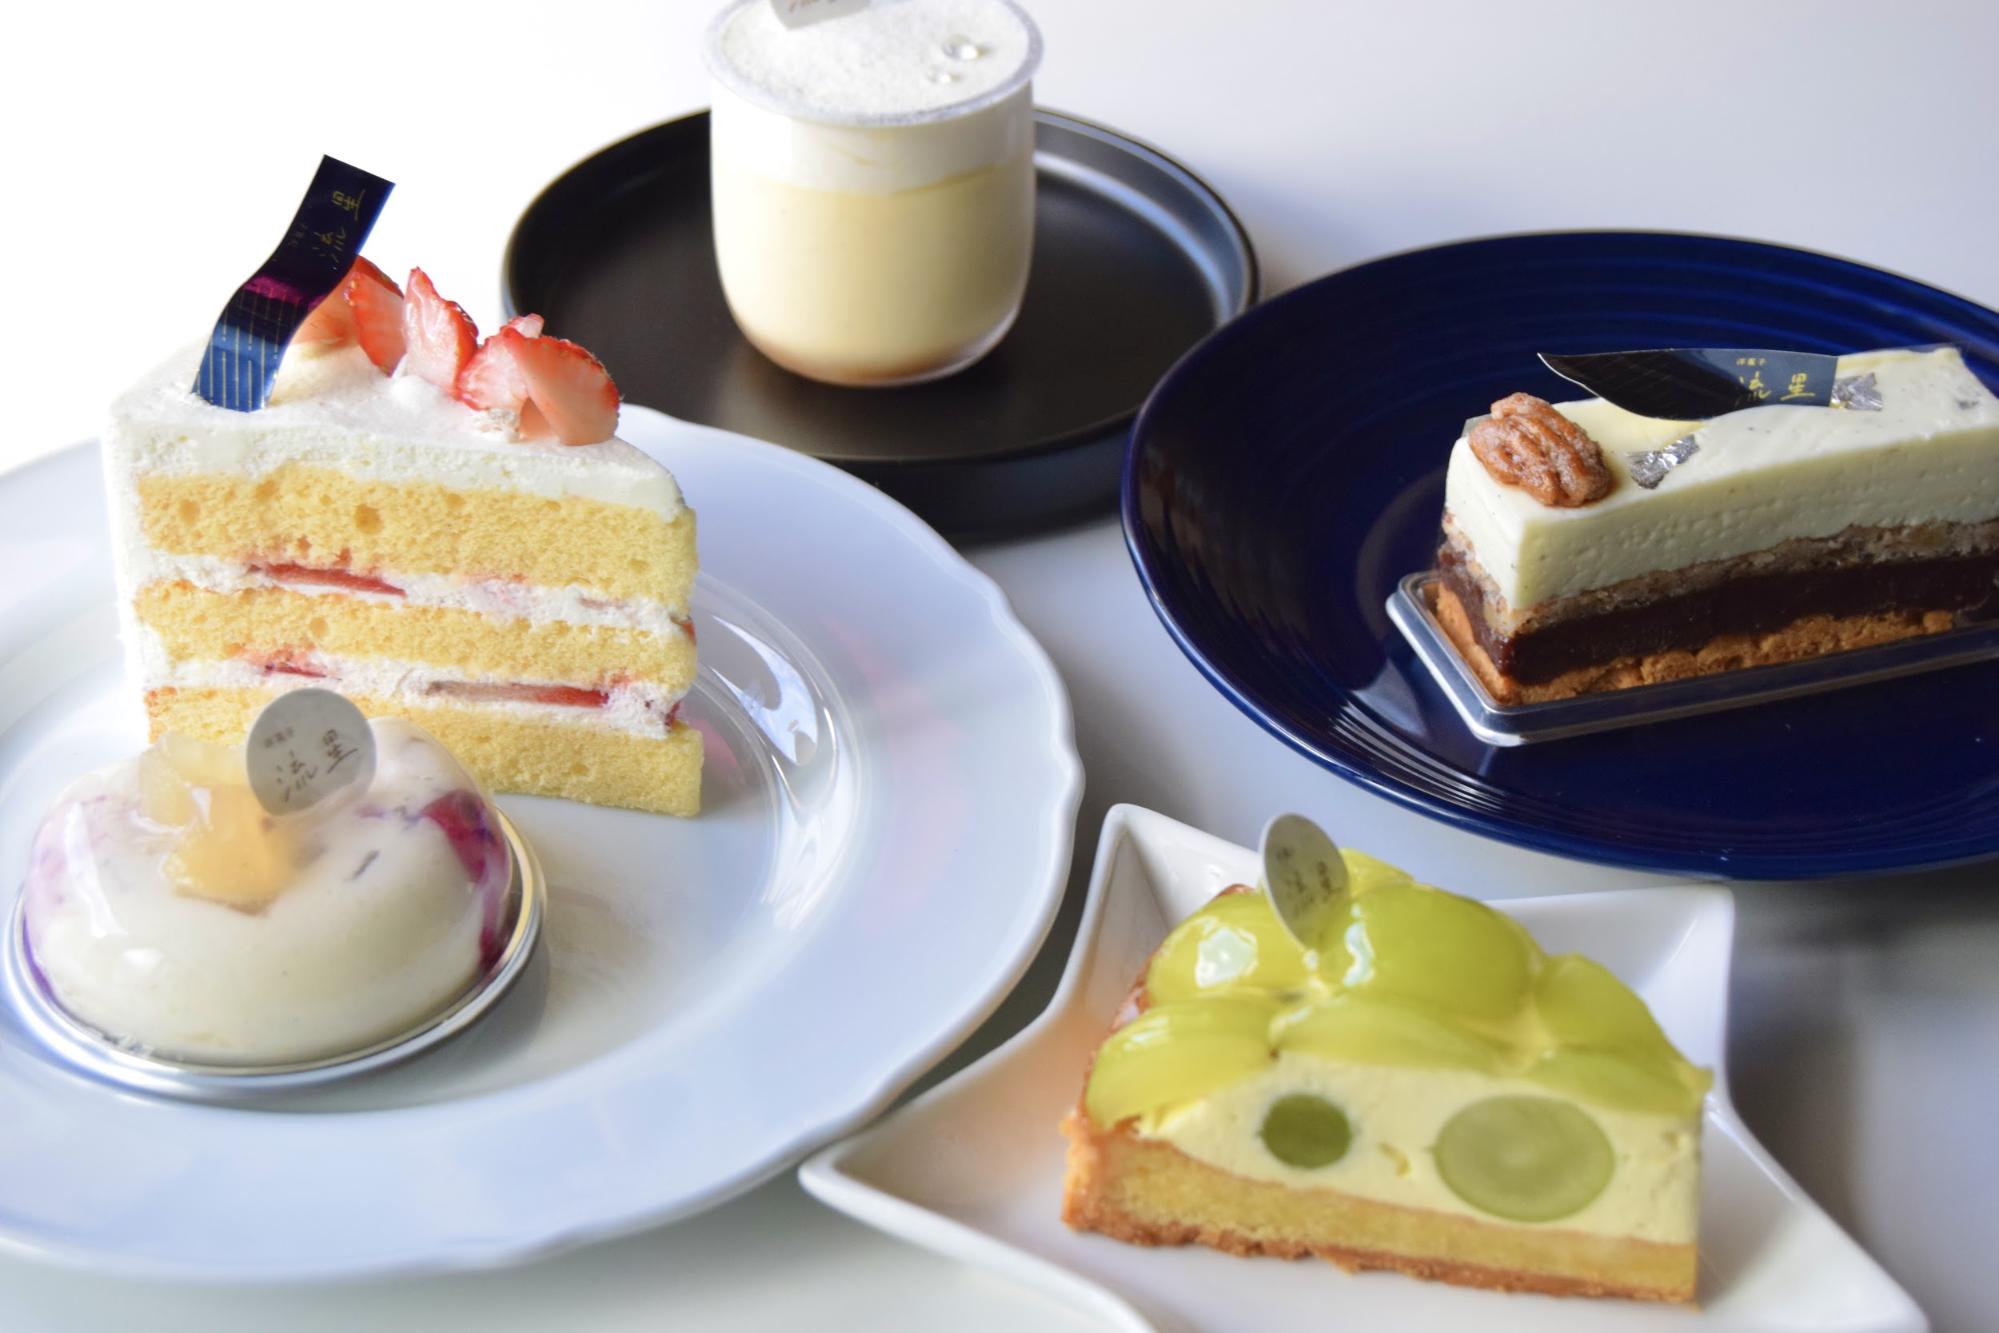 「喫茶室山脈」の姉妹店で、フランス菓子の魅力を再発見！岐阜県岐南町にある「洋菓子と珈琲 流星」